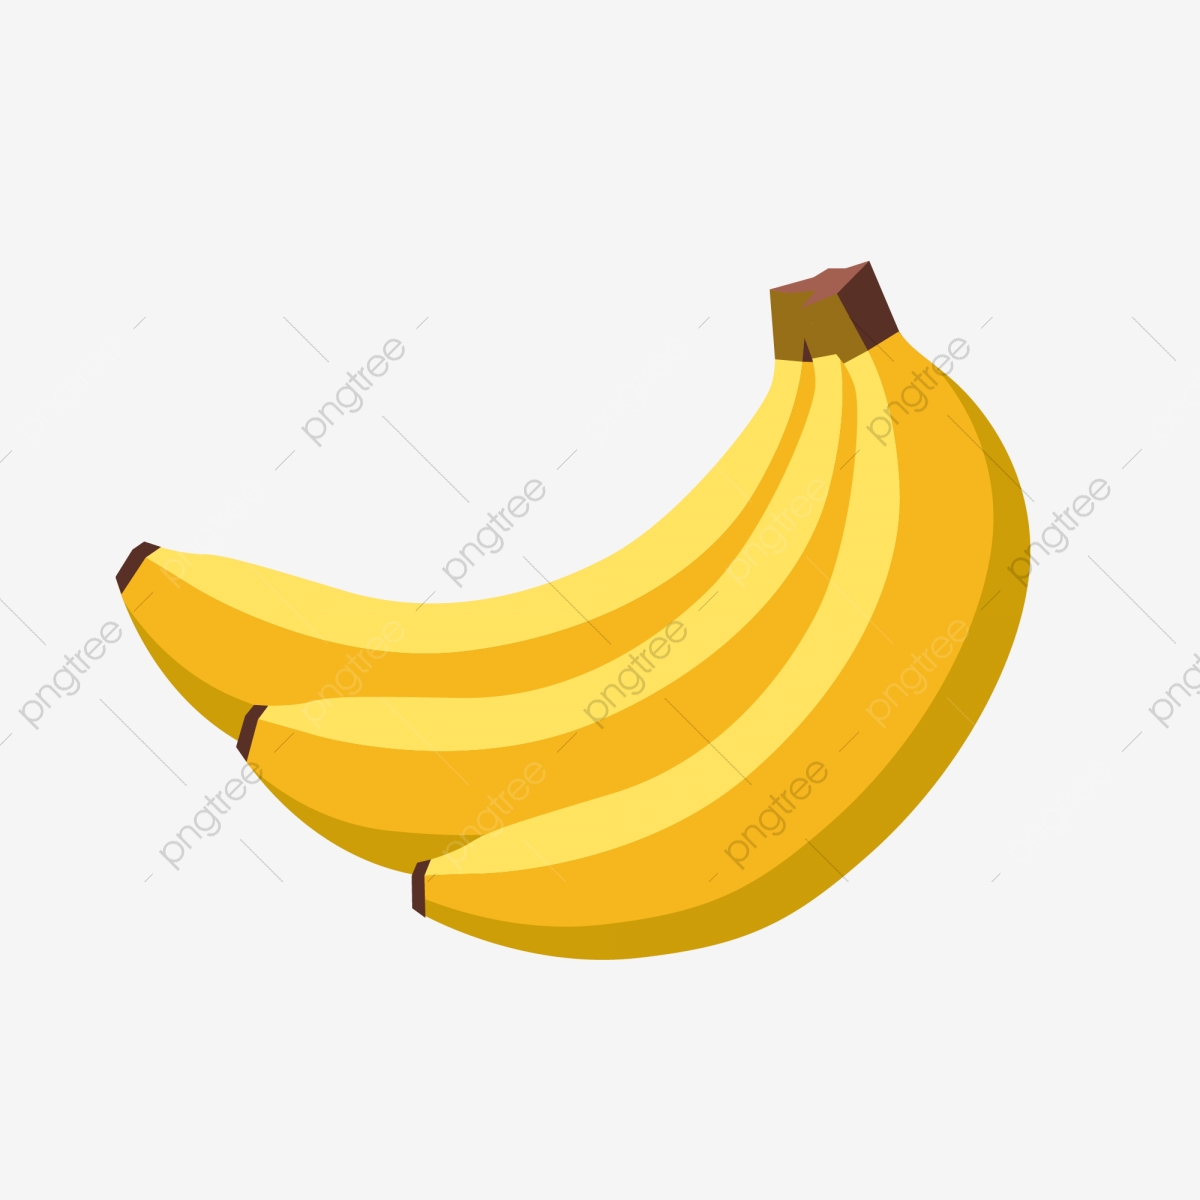 bananas clipart three